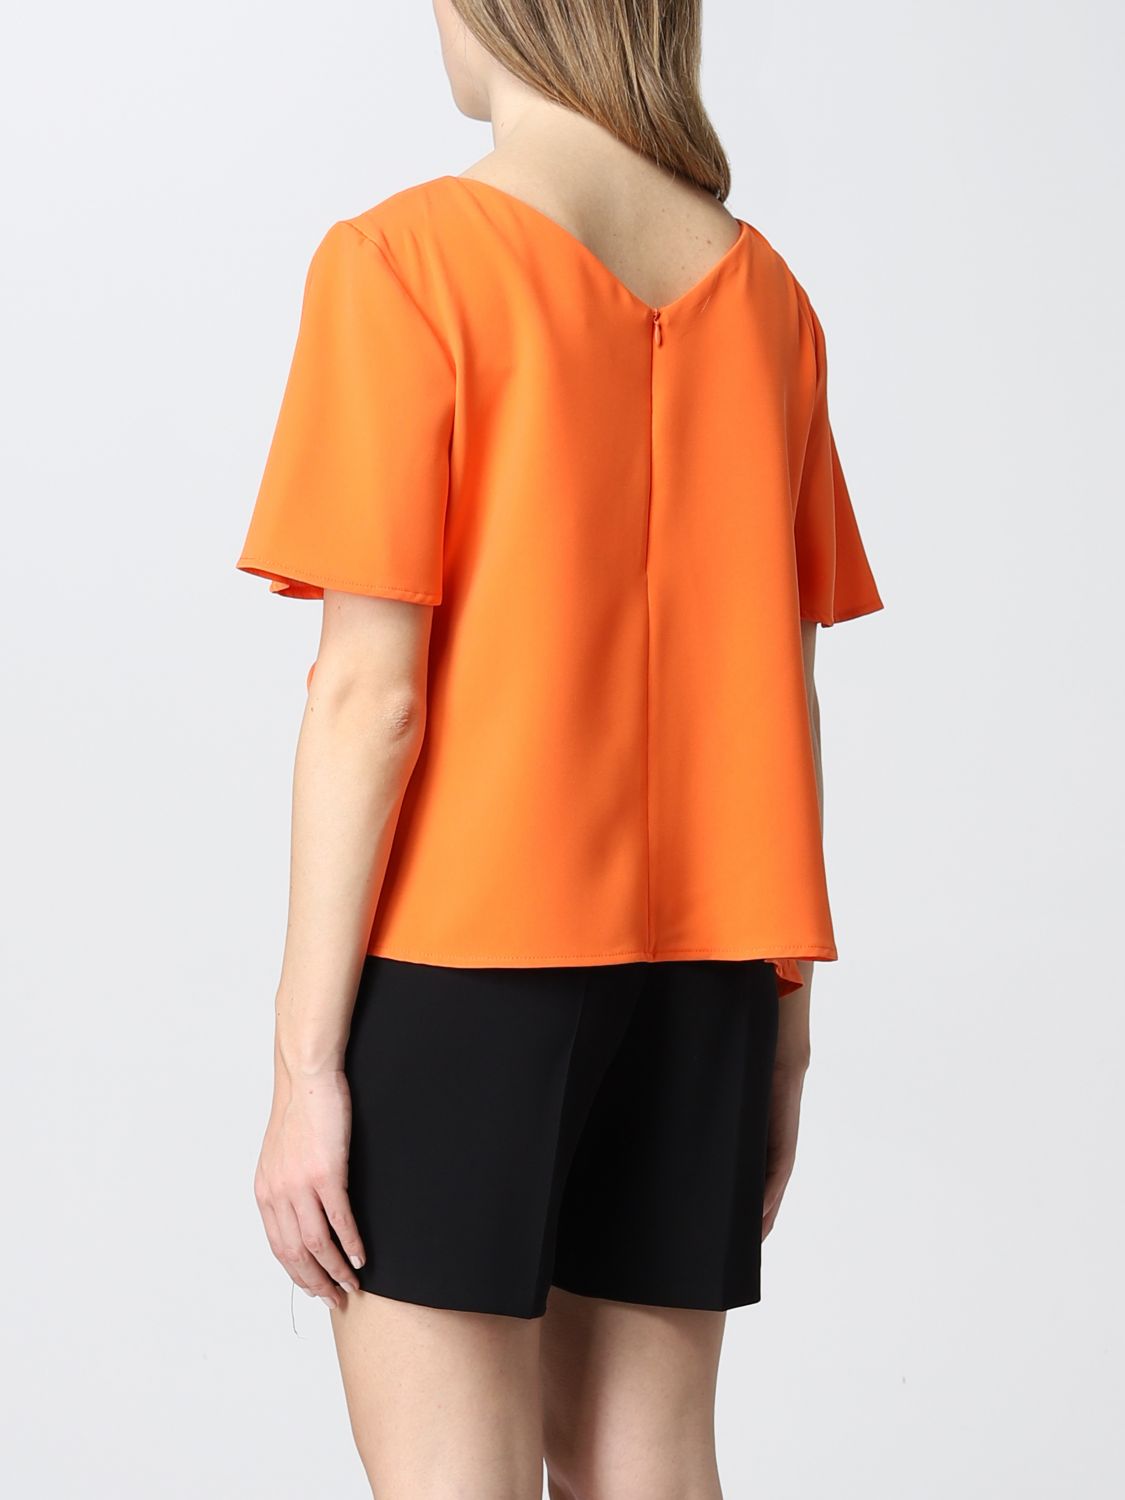 Top Kaos: Top femme Kaos orange 2